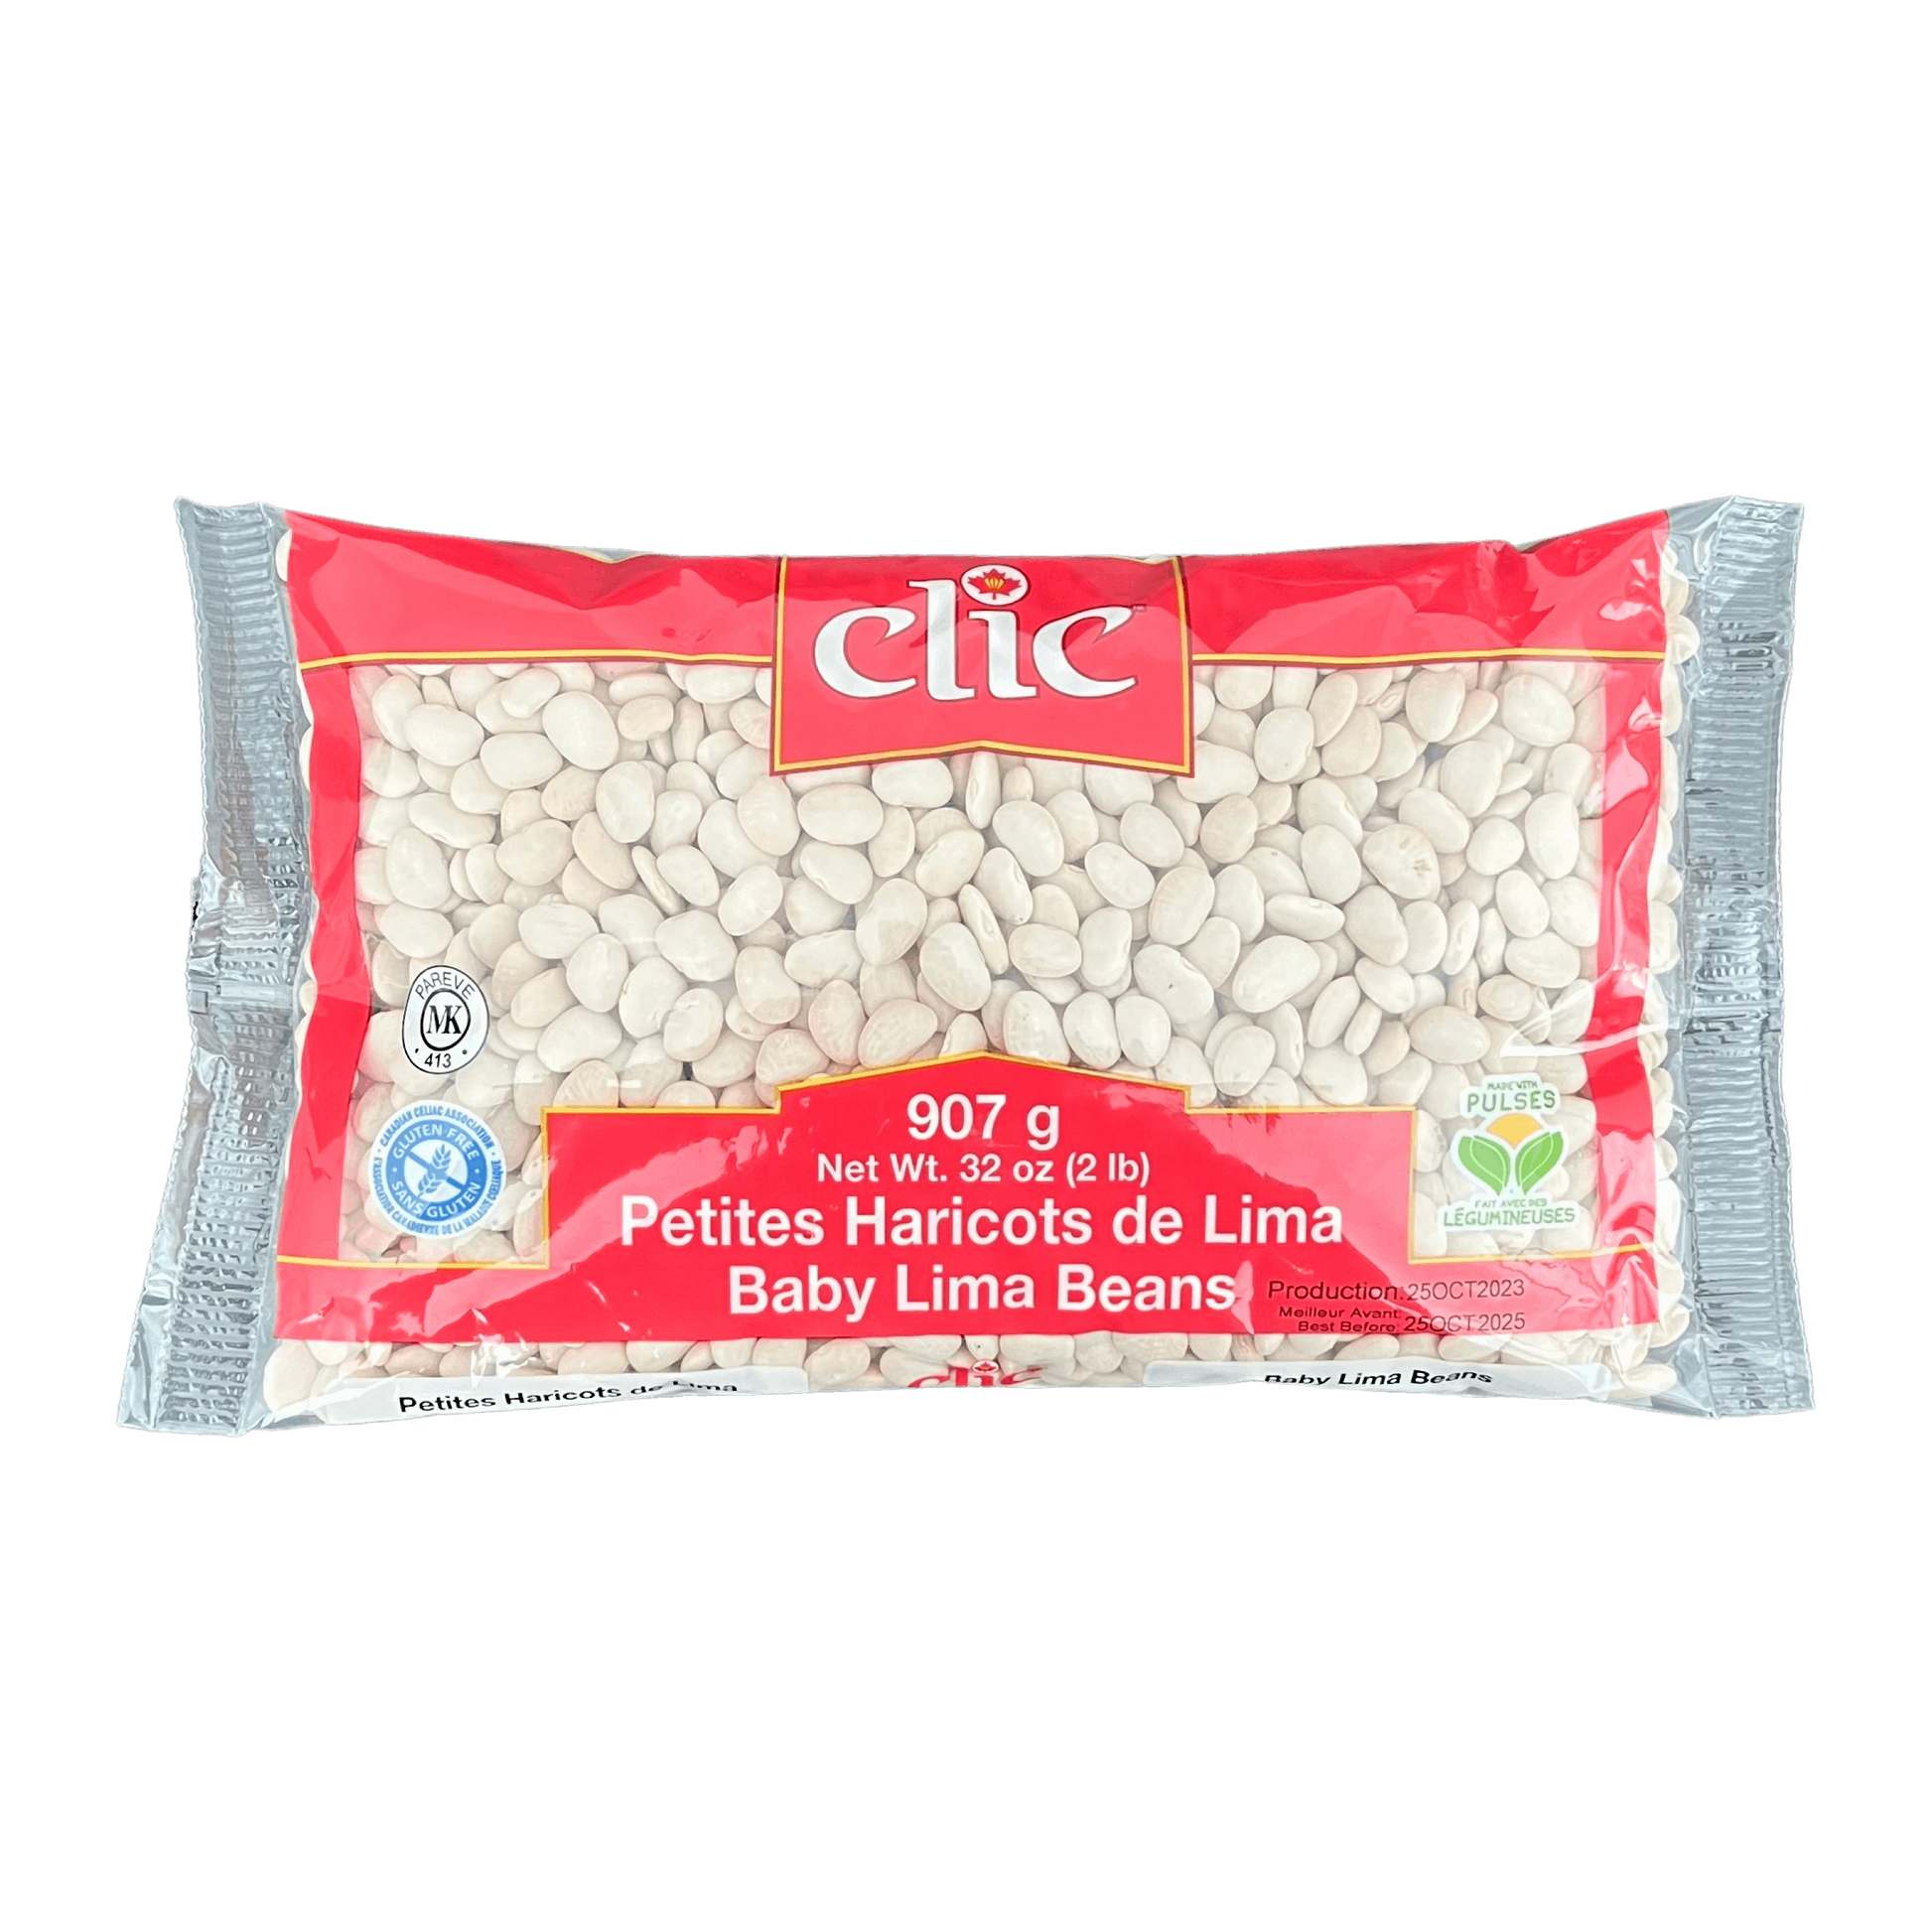 Clic Baby Lima Beans 907g Damaski